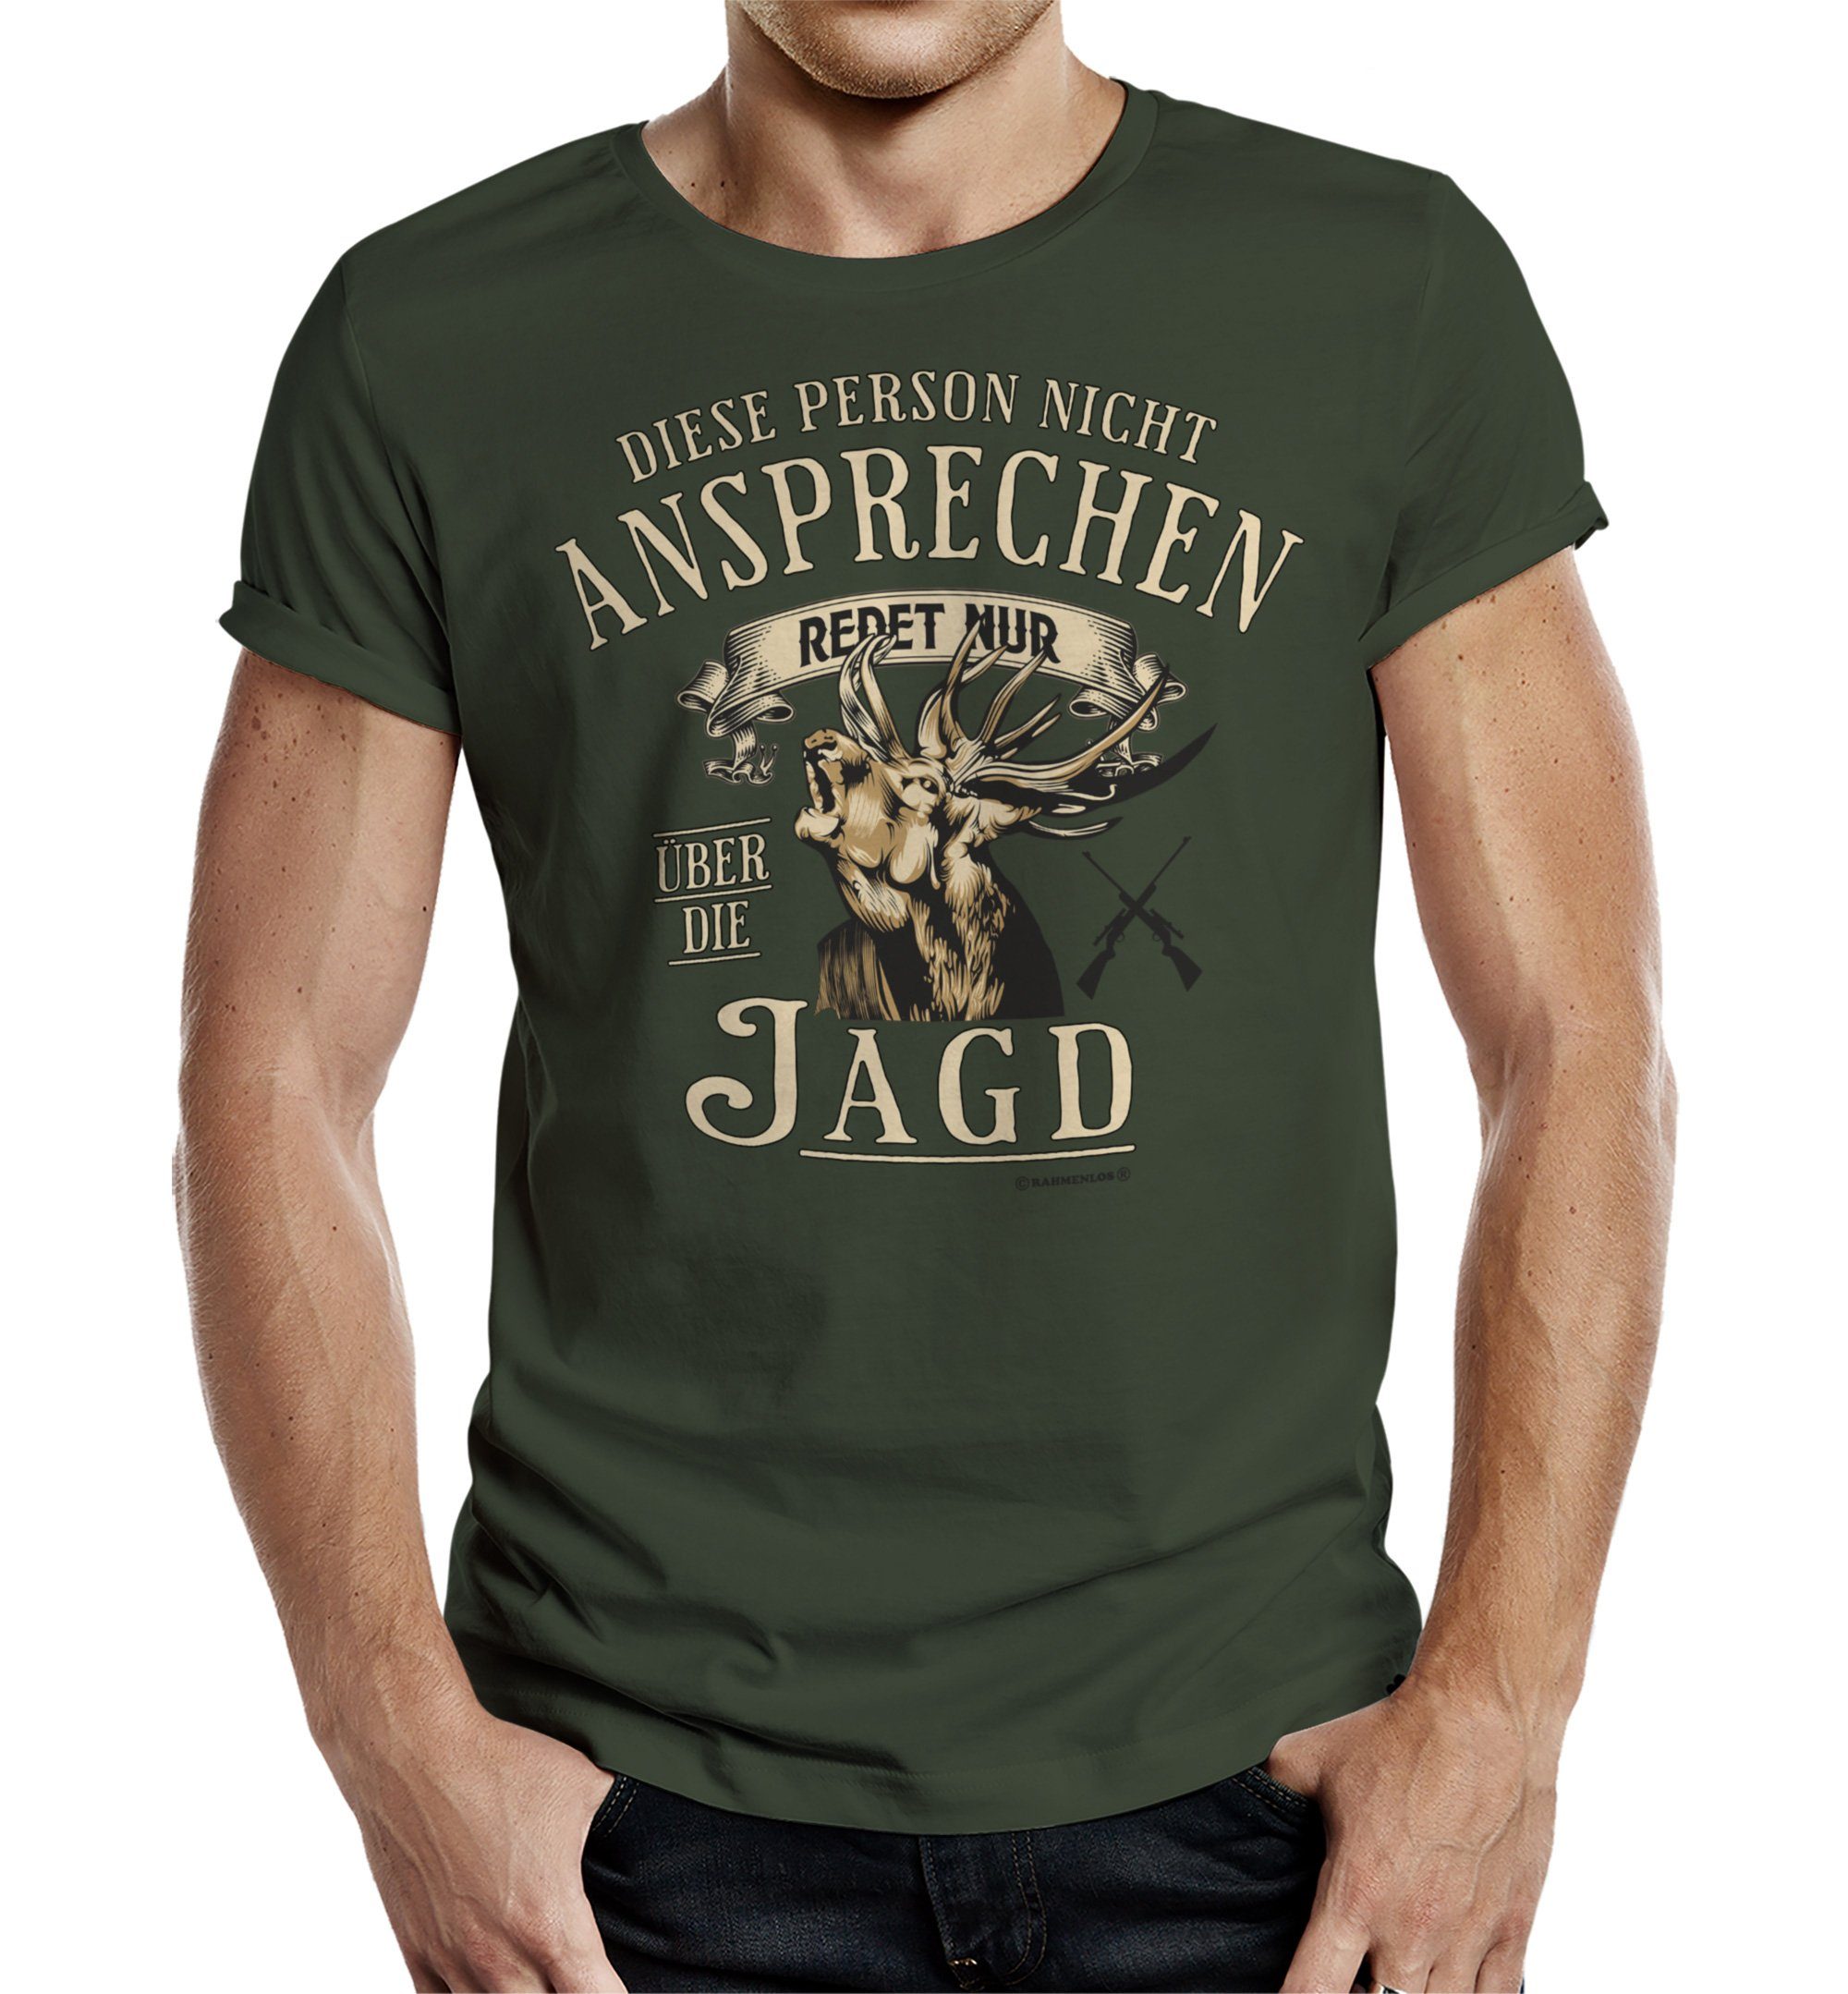 Rahmenlos T-Shirt als Geschenk für Jäger - nicht ansprechen, redet nur über die Jagd | T-Shirts